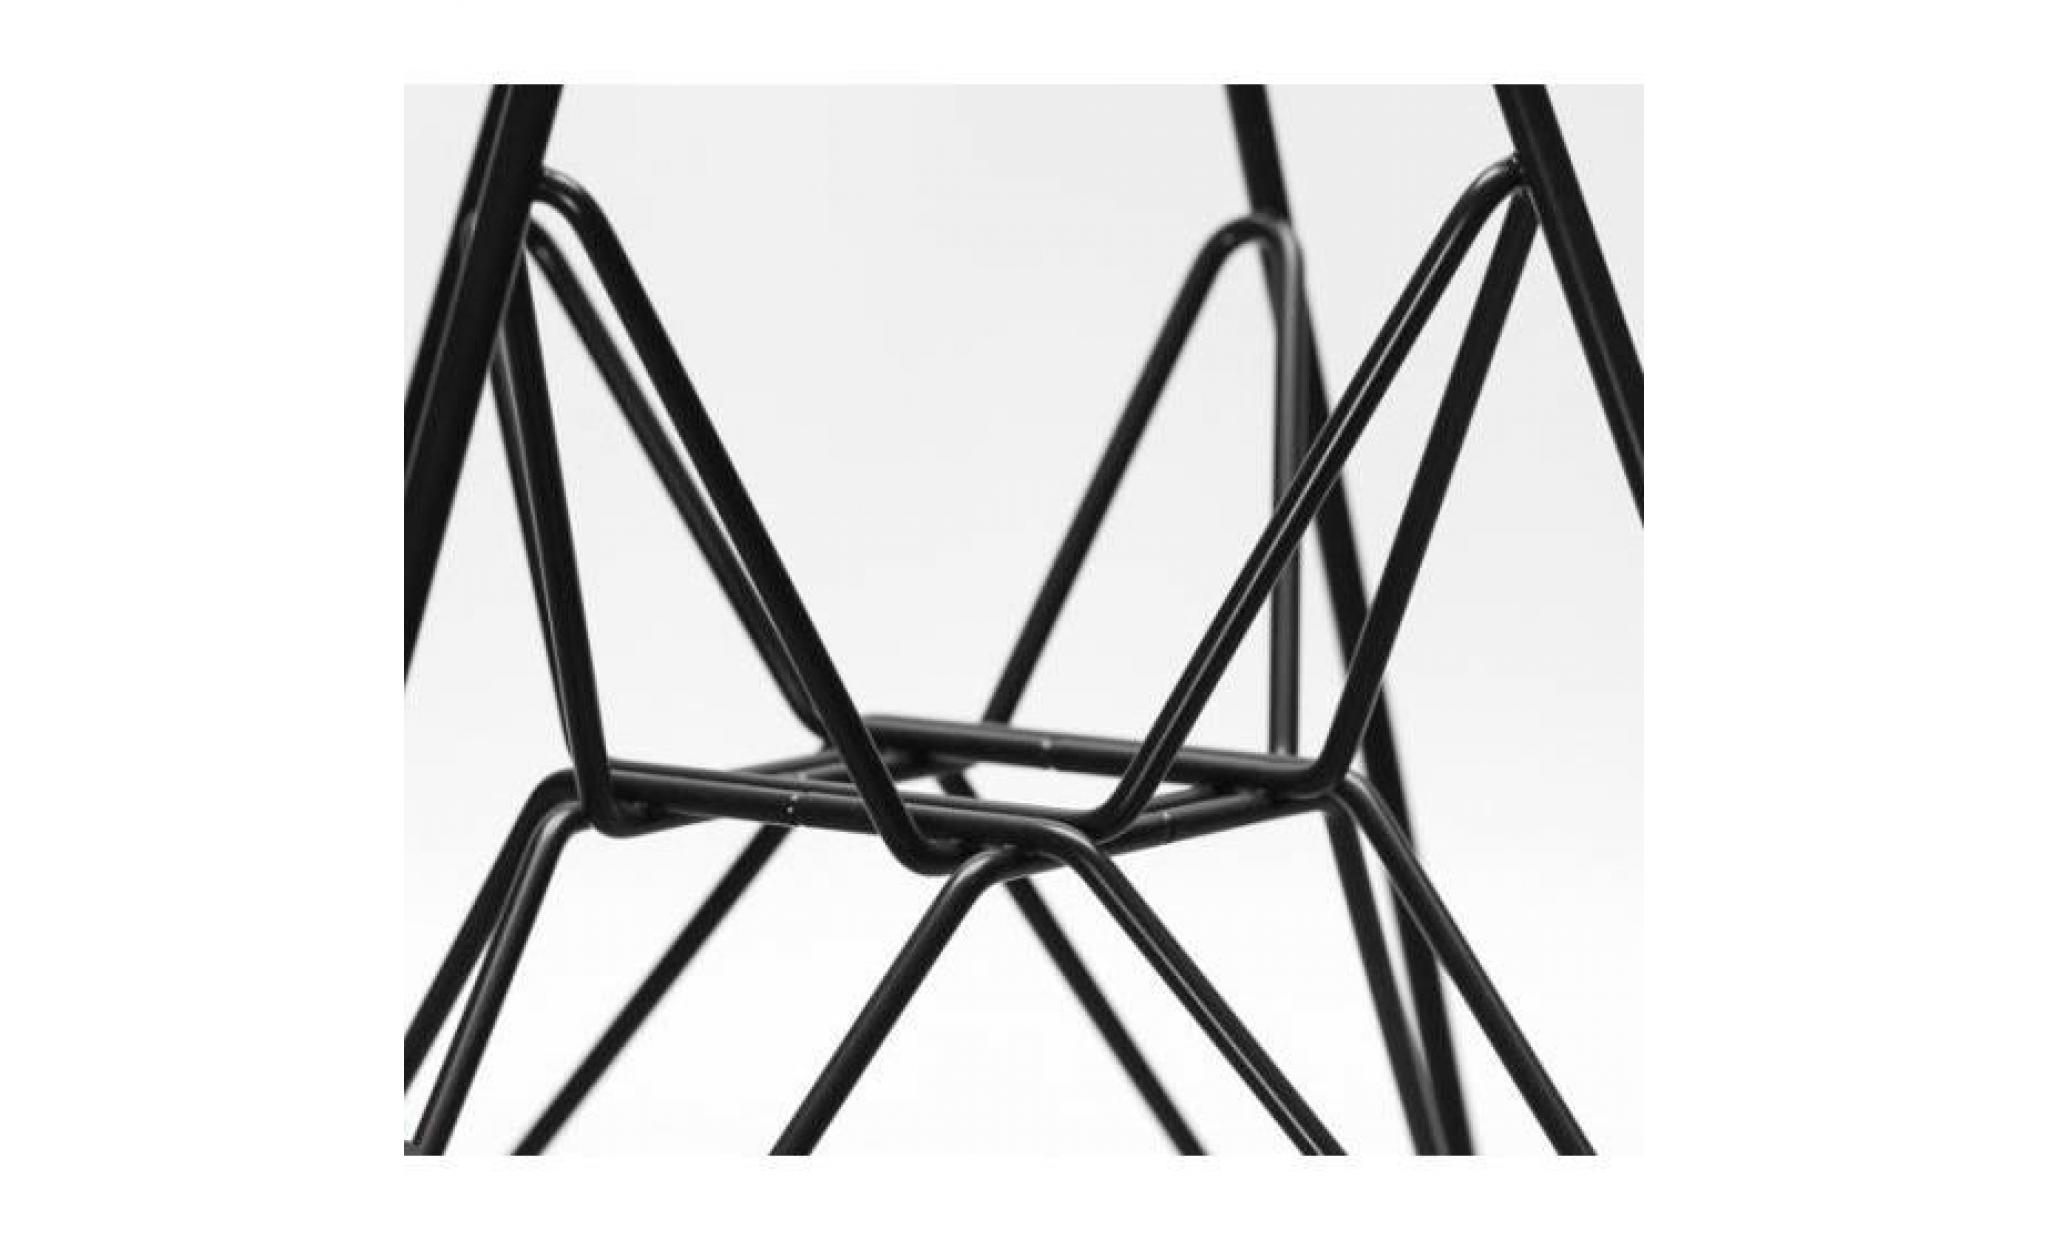 1 x fauteuil design  style  eiffel haut. 48 cm creme pieds: acier noir decopresto dp darb48 cr 1 pas cher